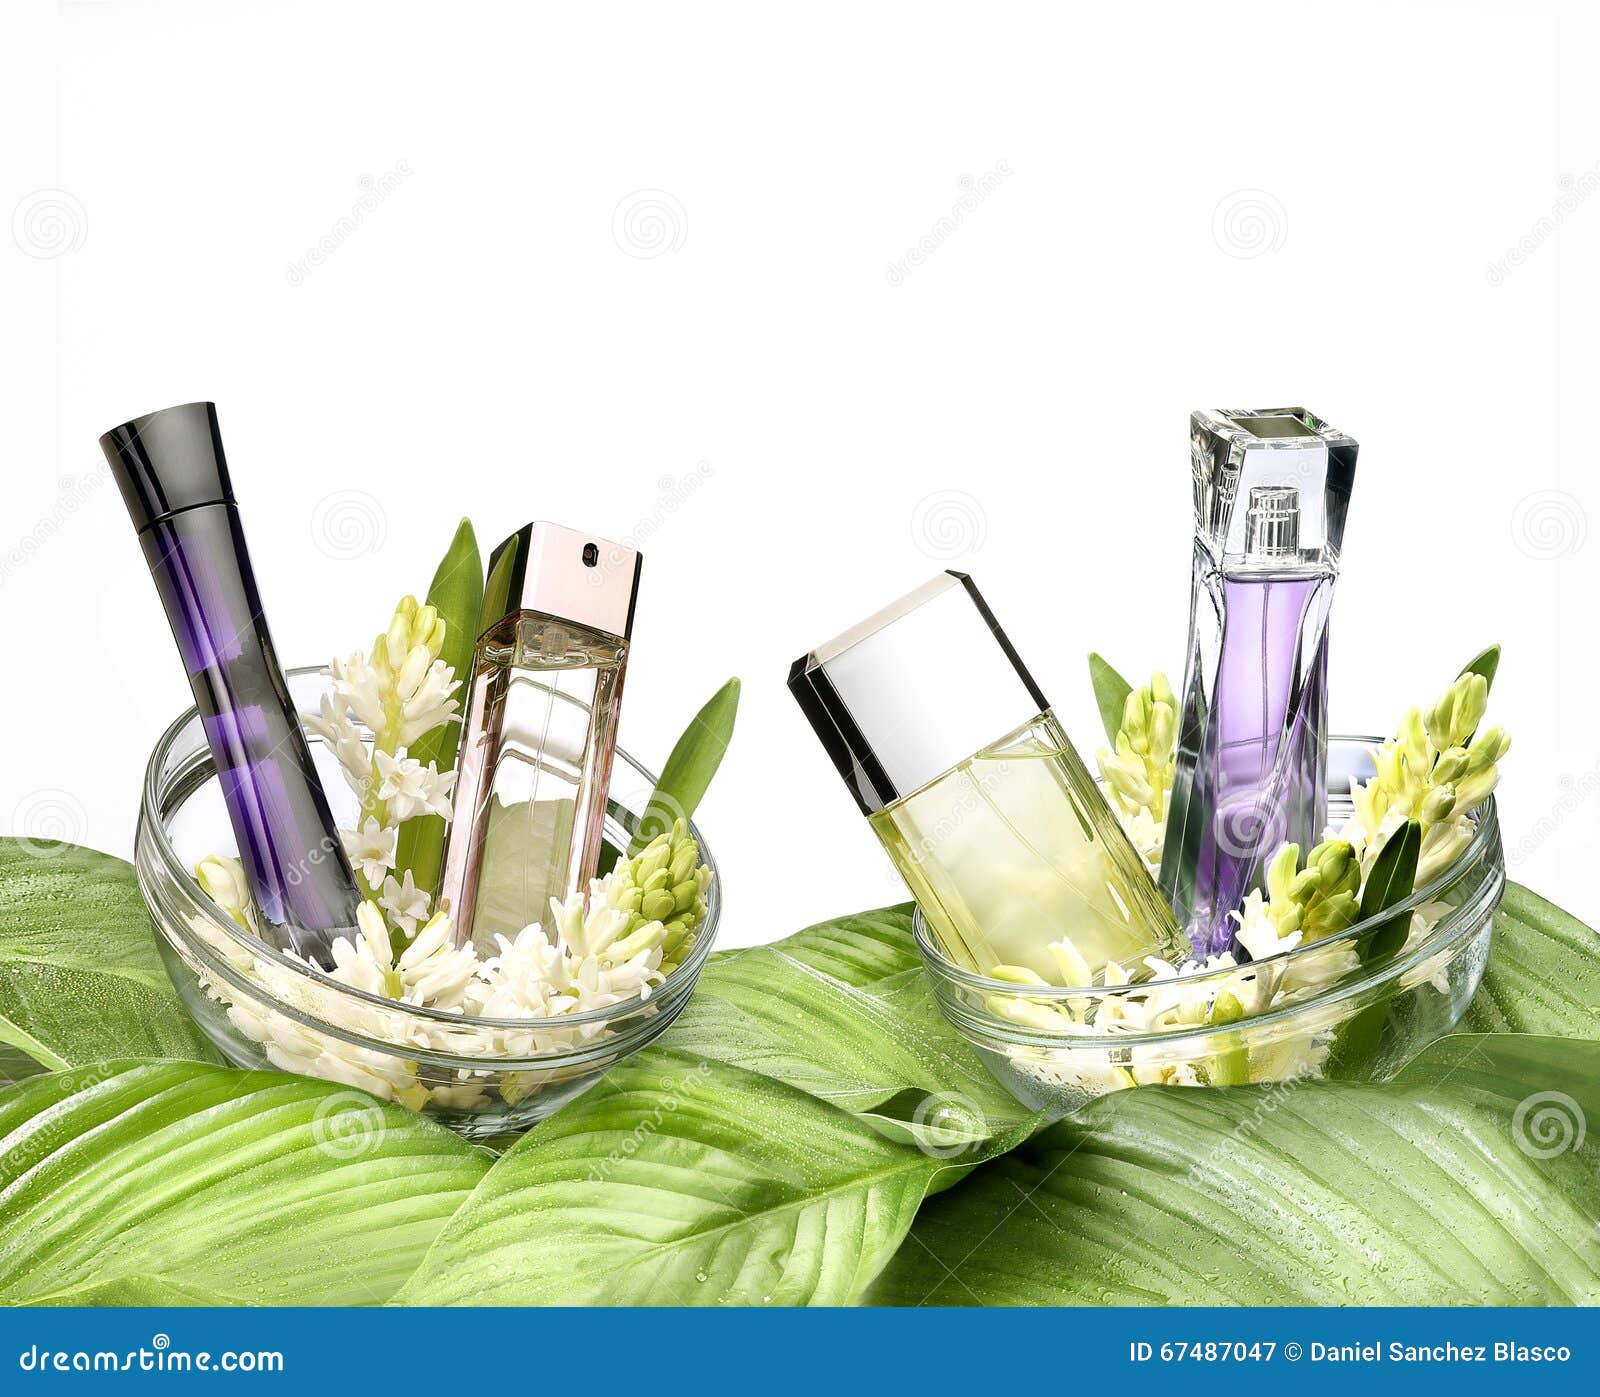 still life of fragrances